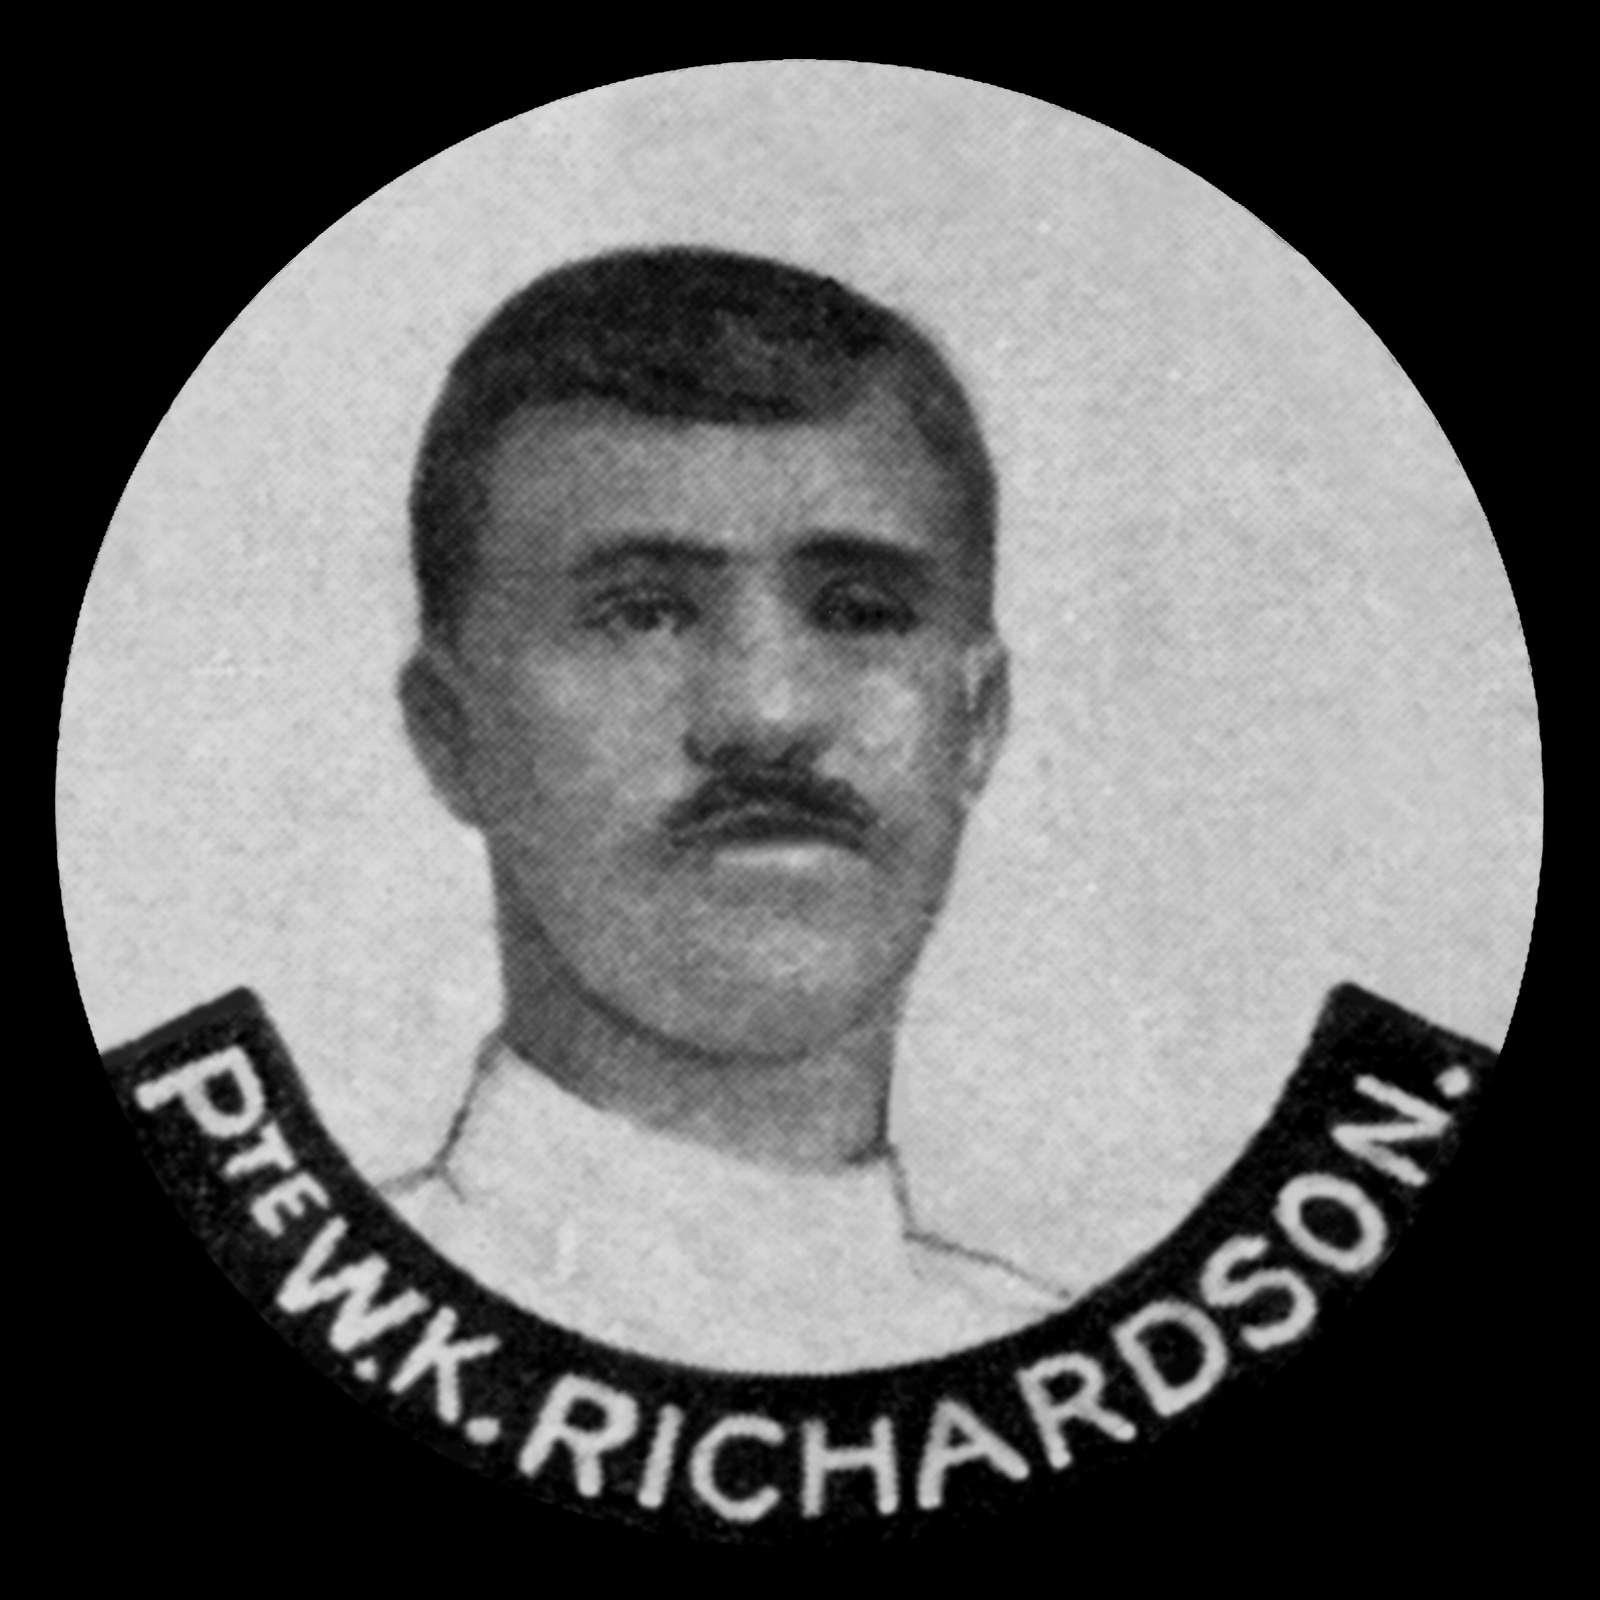 RICHARDSON William Kimpton